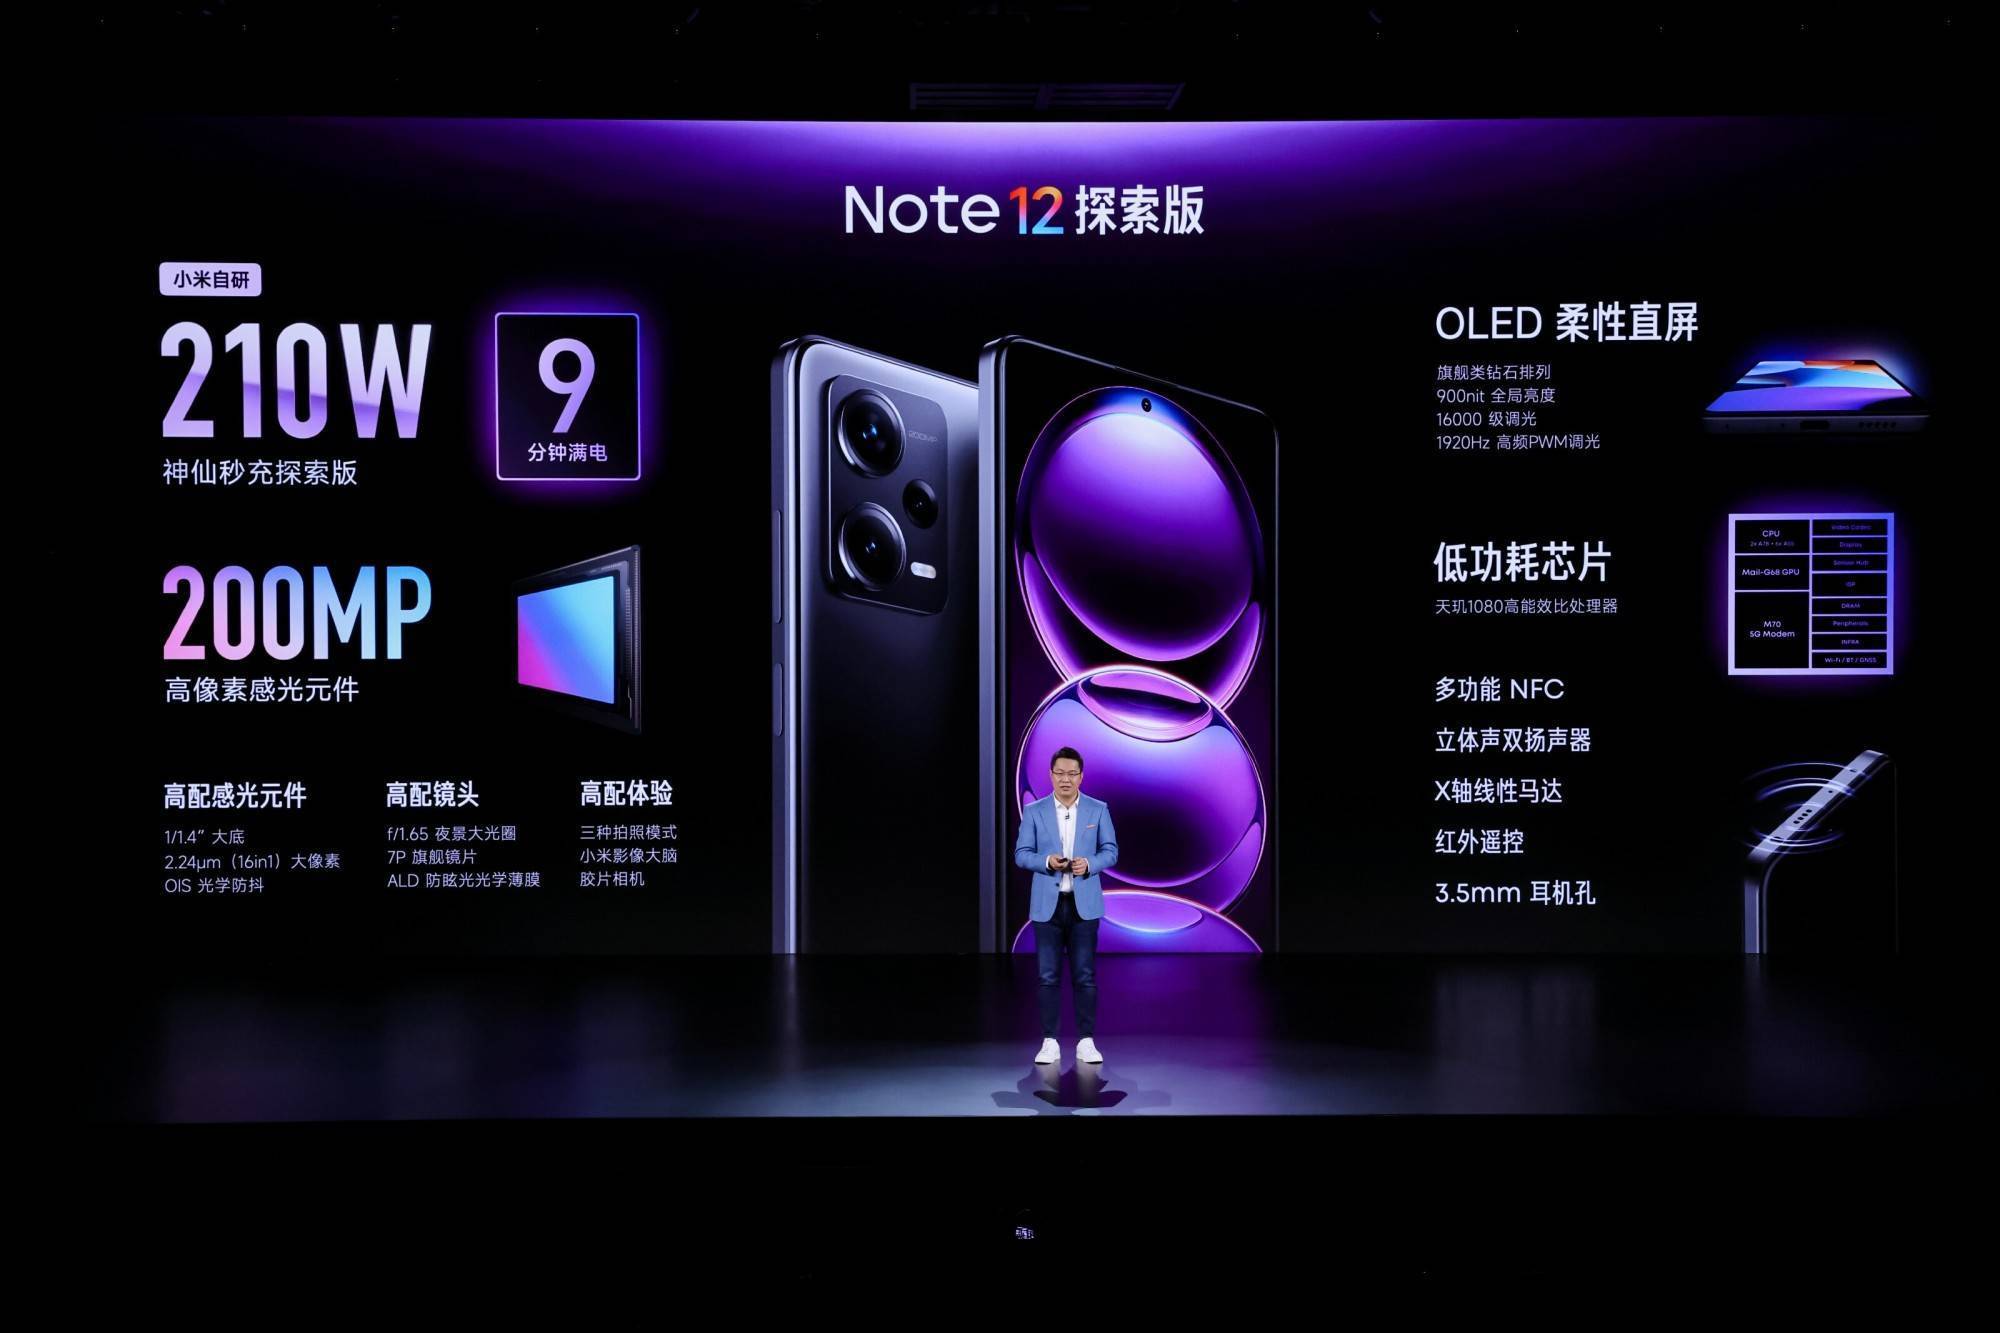 全球首发210W超级闪充9分钟报百 Redmi Note 12探索版引领快充进入个位数时代